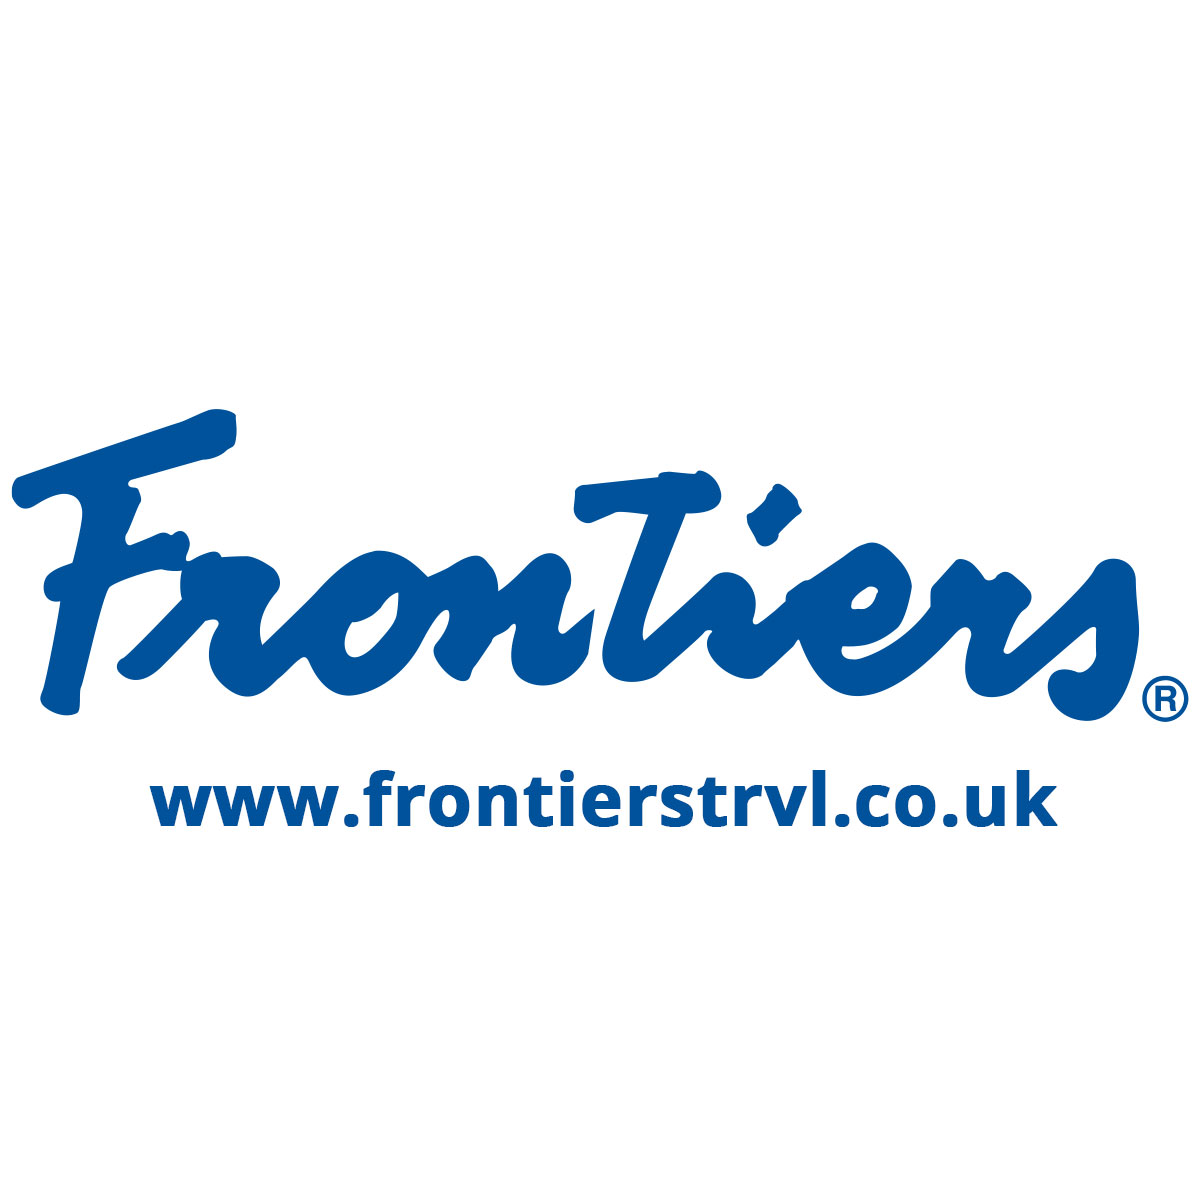 (c) Frontierstrvl.co.uk